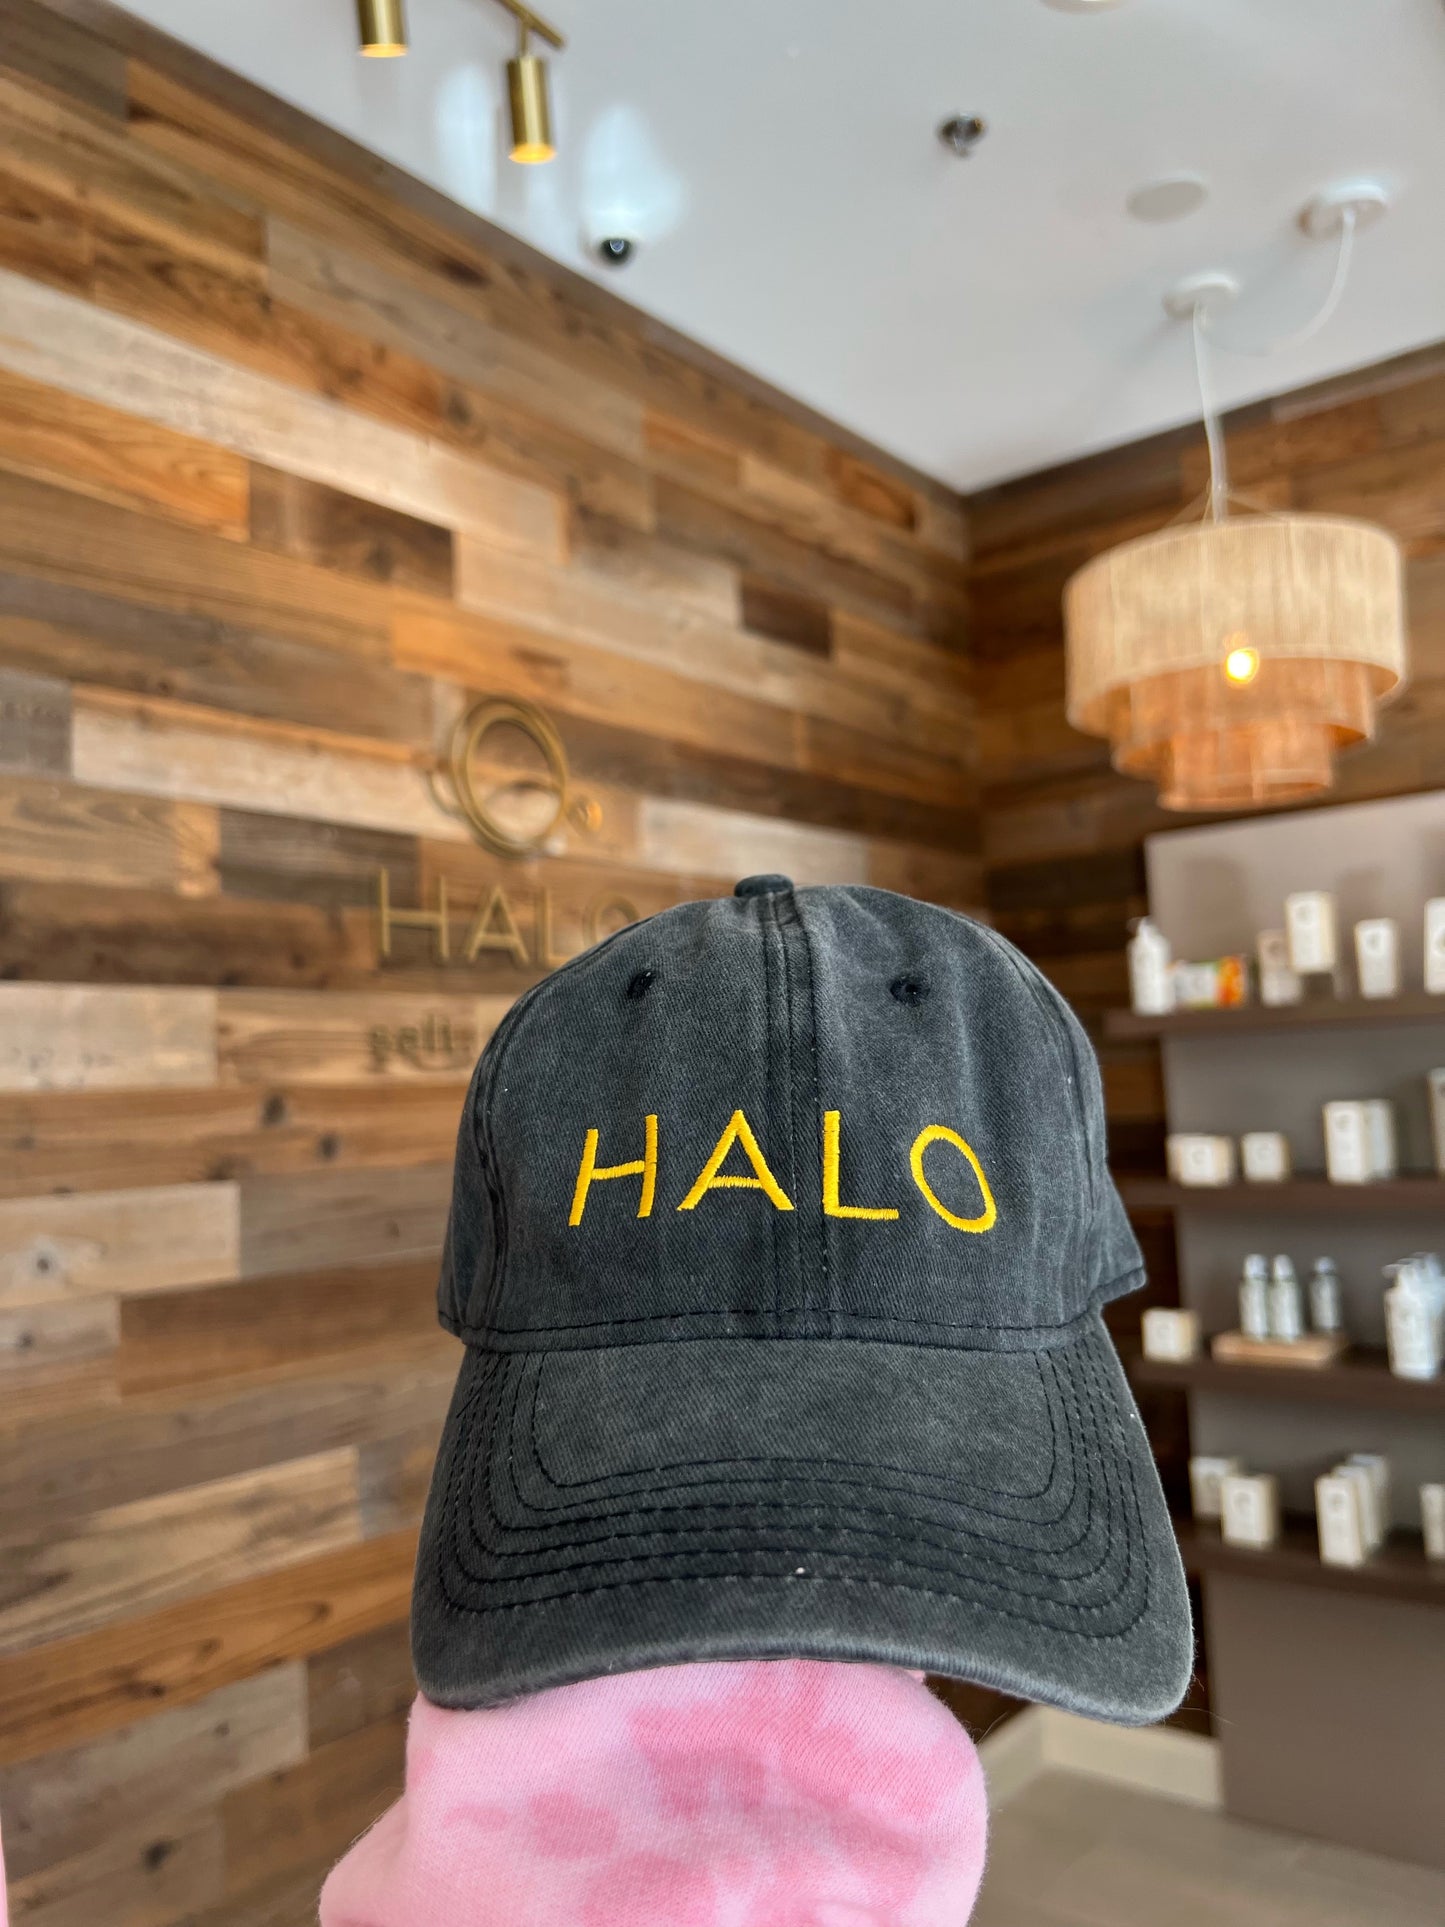 HALO hat